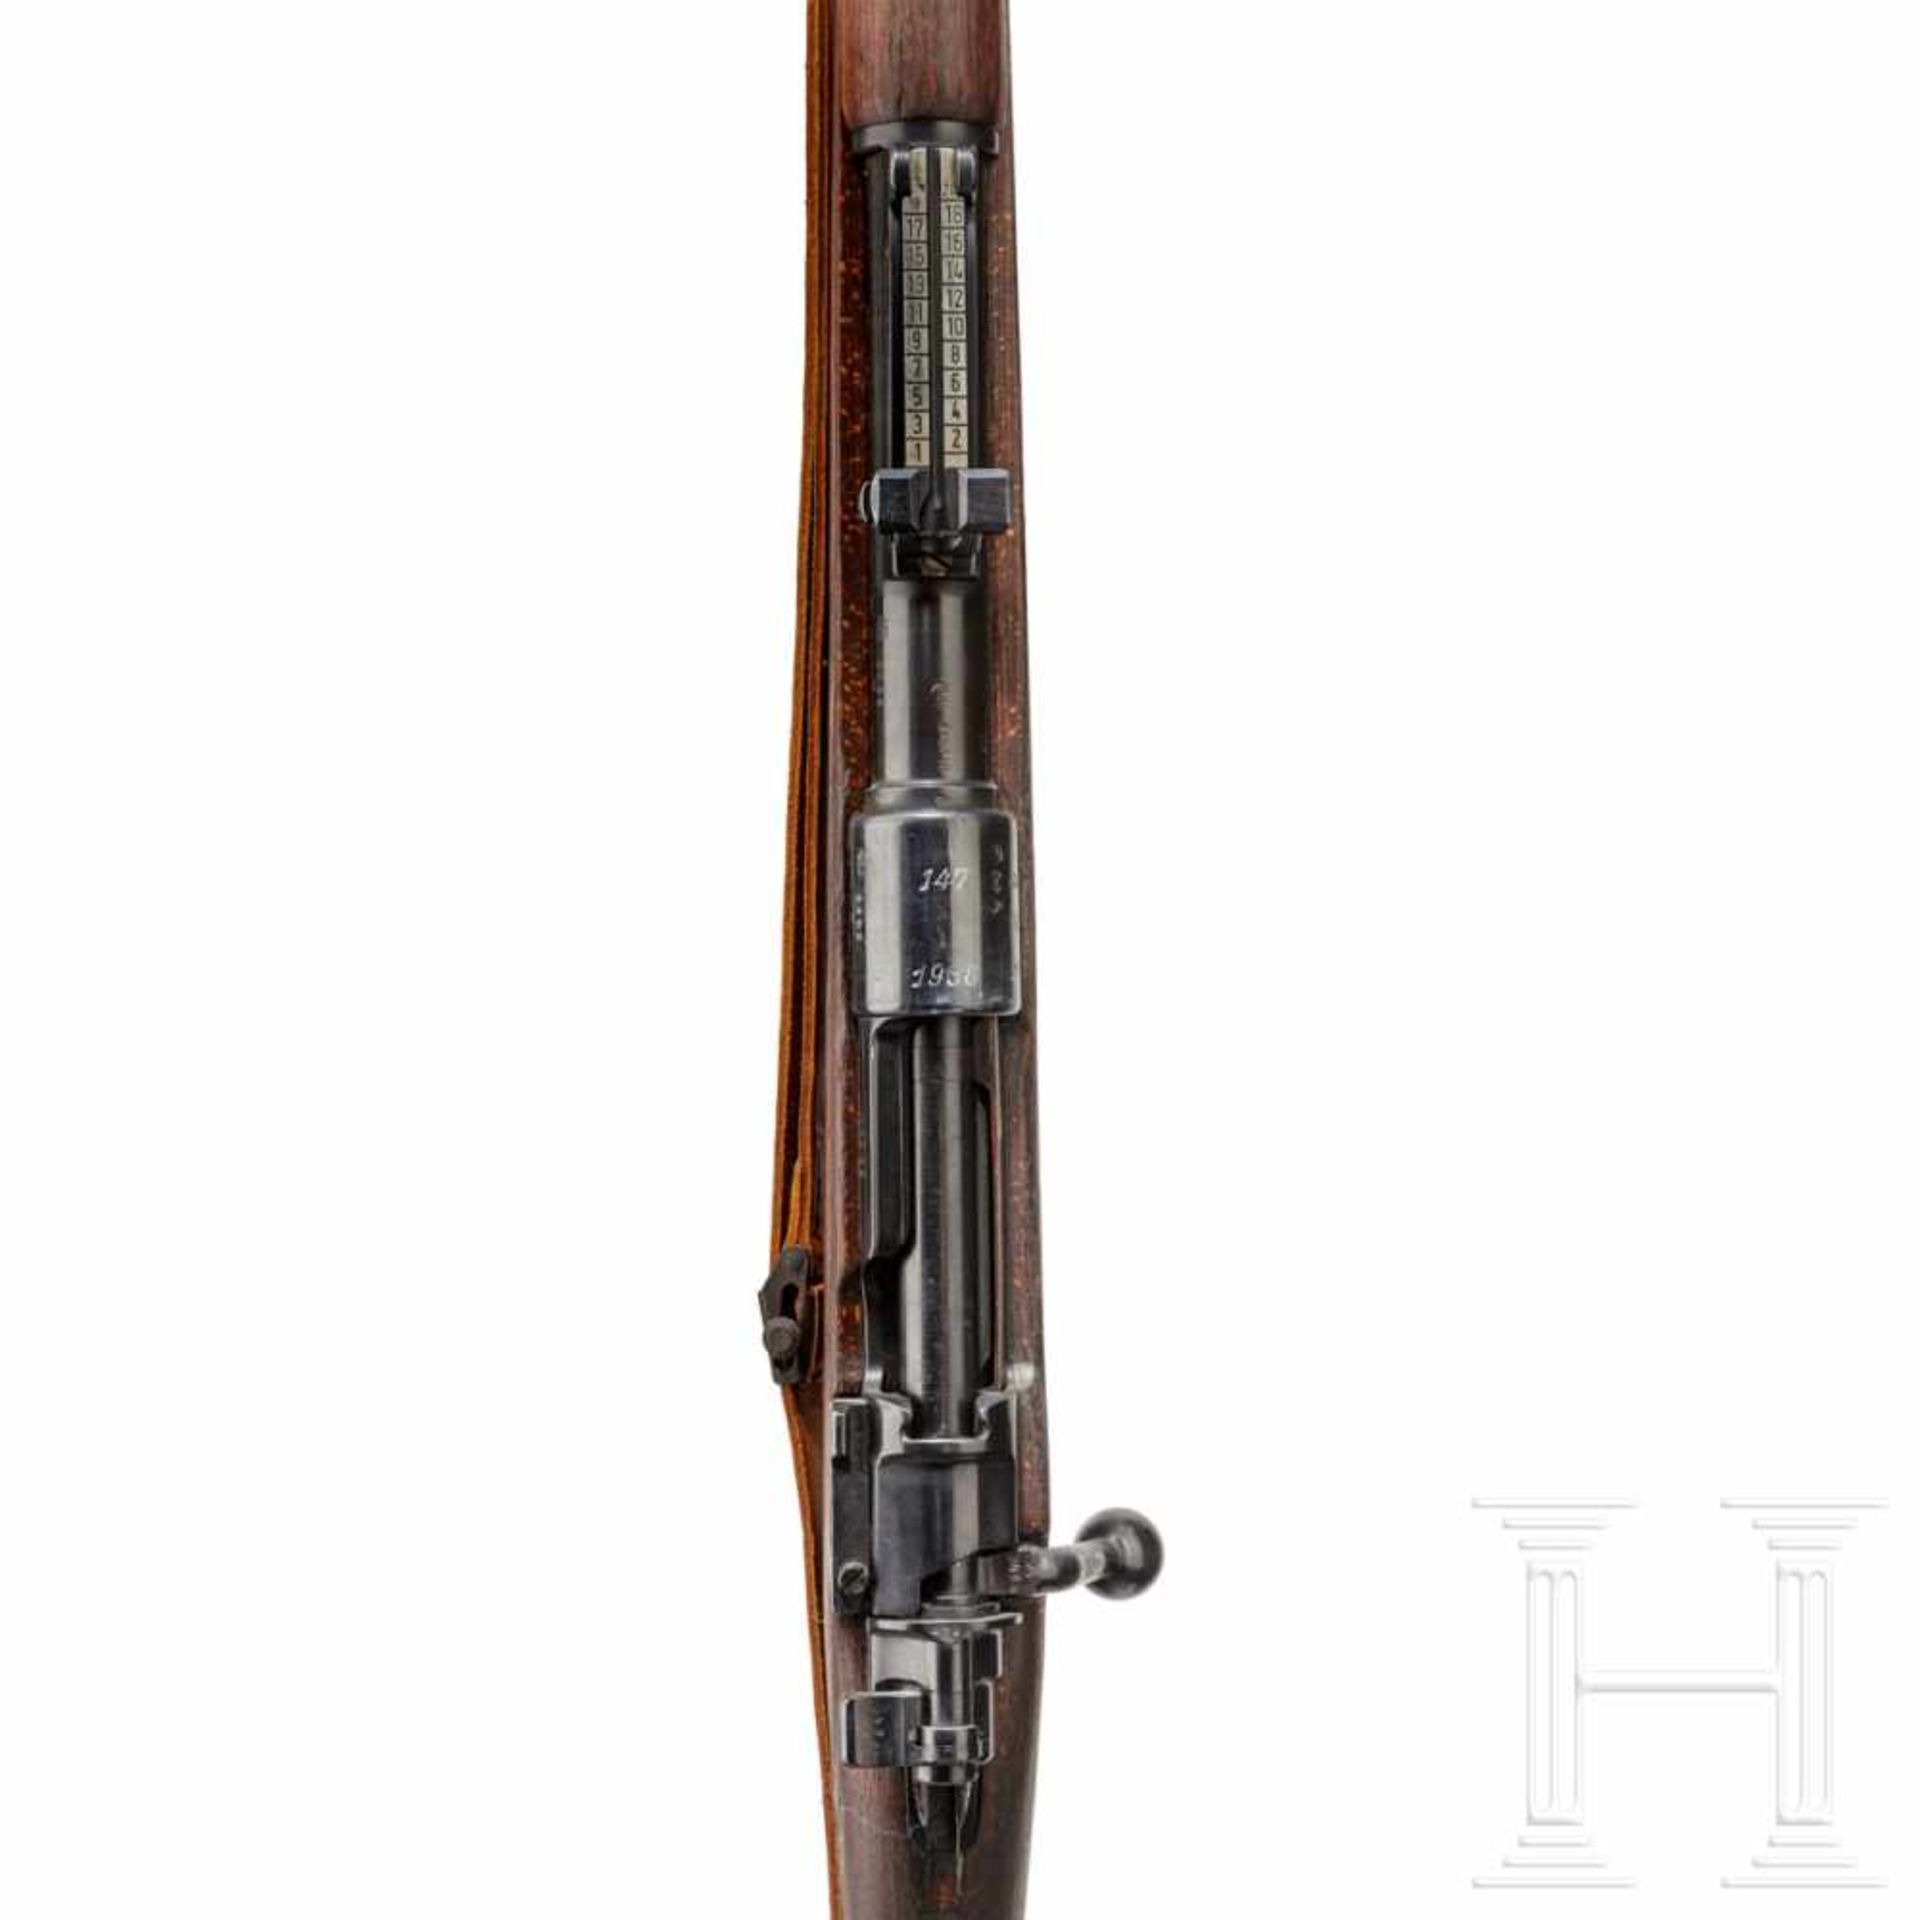 A carbine 98 k, code "147 - 1938"Kal. 8x57 IS, Nr. 2492m, nummerngleich inkl. Schrauben bis auf - Bild 3 aus 3